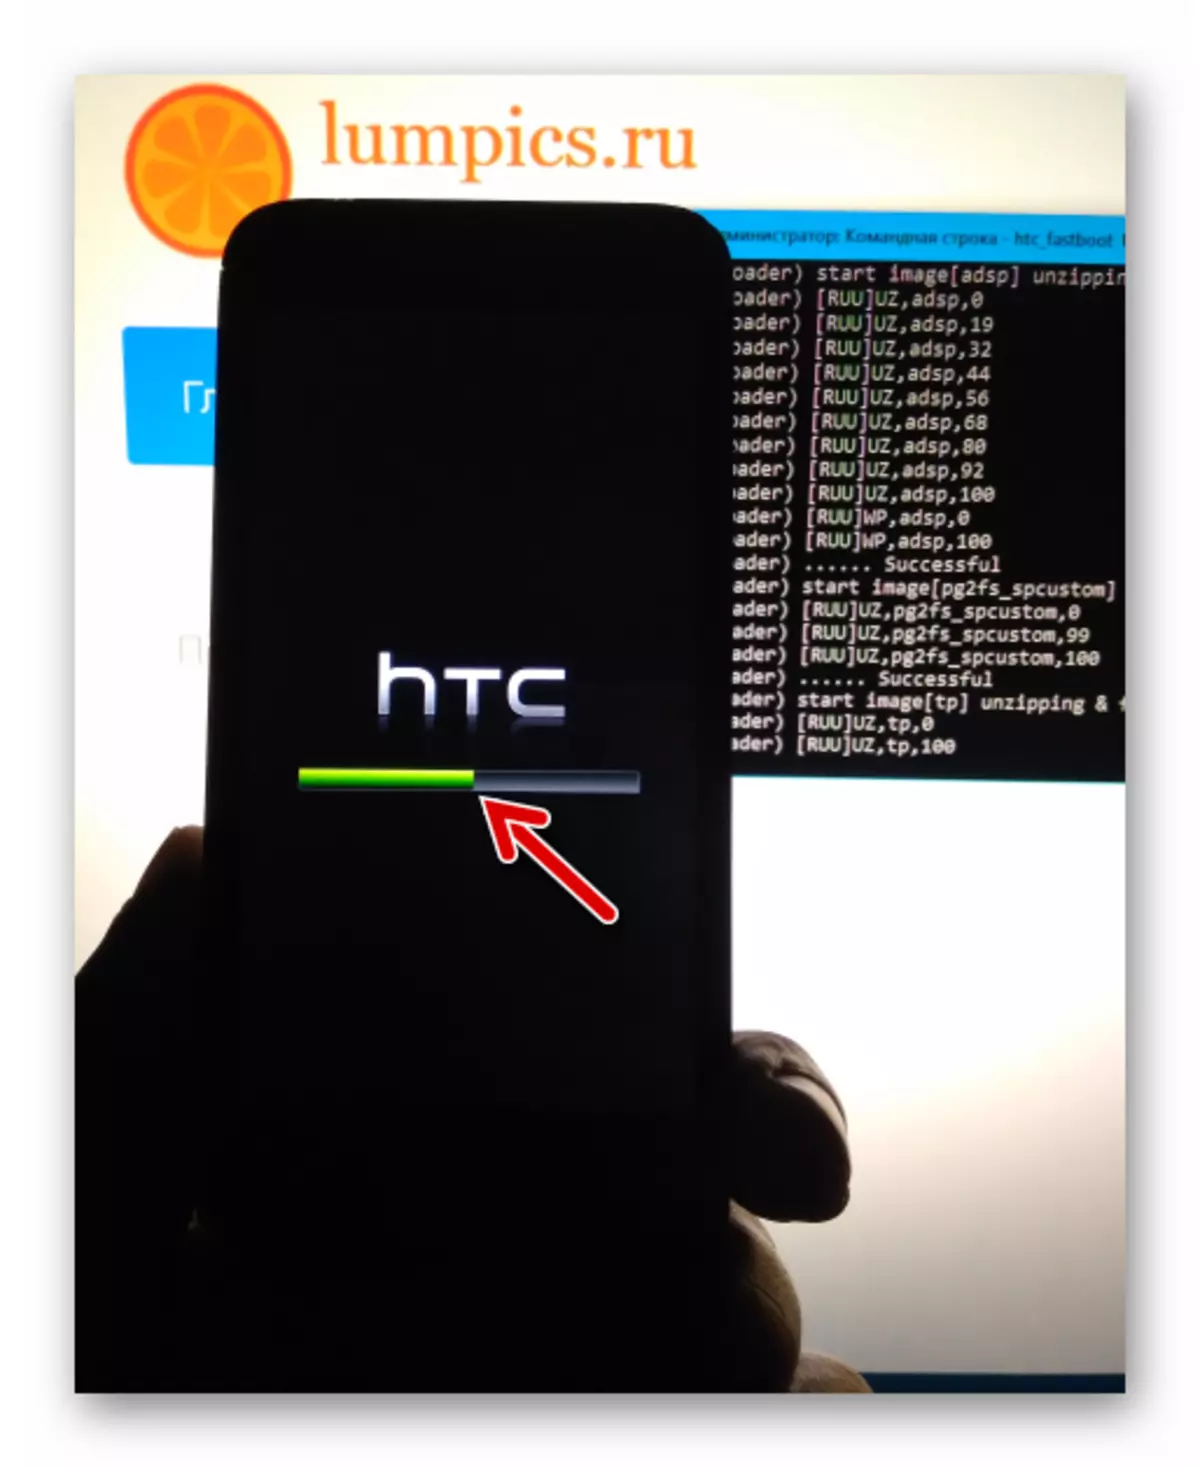 HTC dia maniry ny fanondroana ny famonoana olona amin'ny efijery fitaovana mandritra ny firmware amin'ny alàlan'ny FASTBOOT